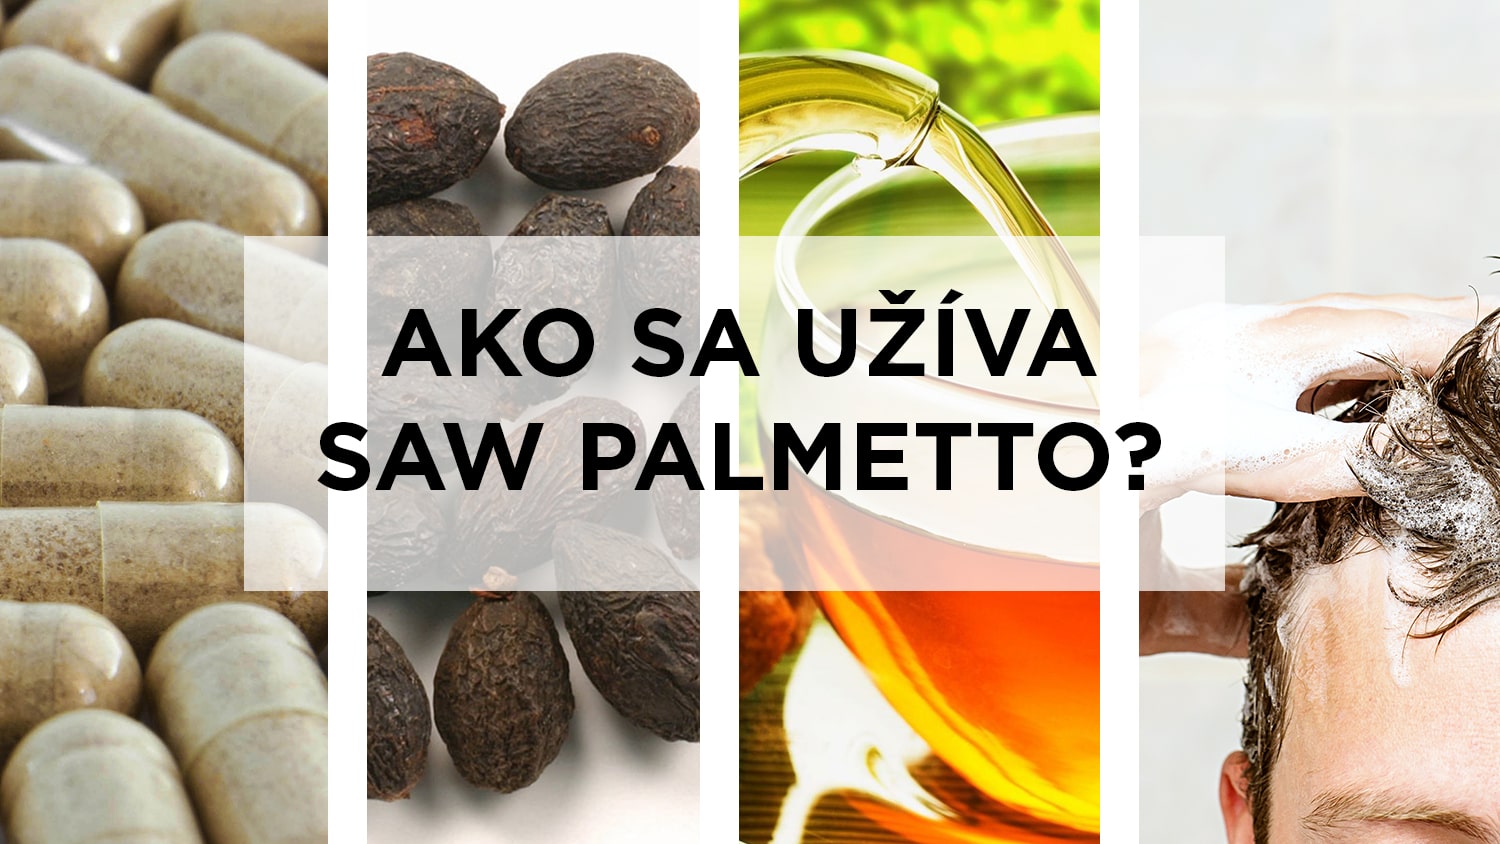 Spôsoby užívania saw palmetta - kapsule, tabletky, sušené plody, čaj, šampón